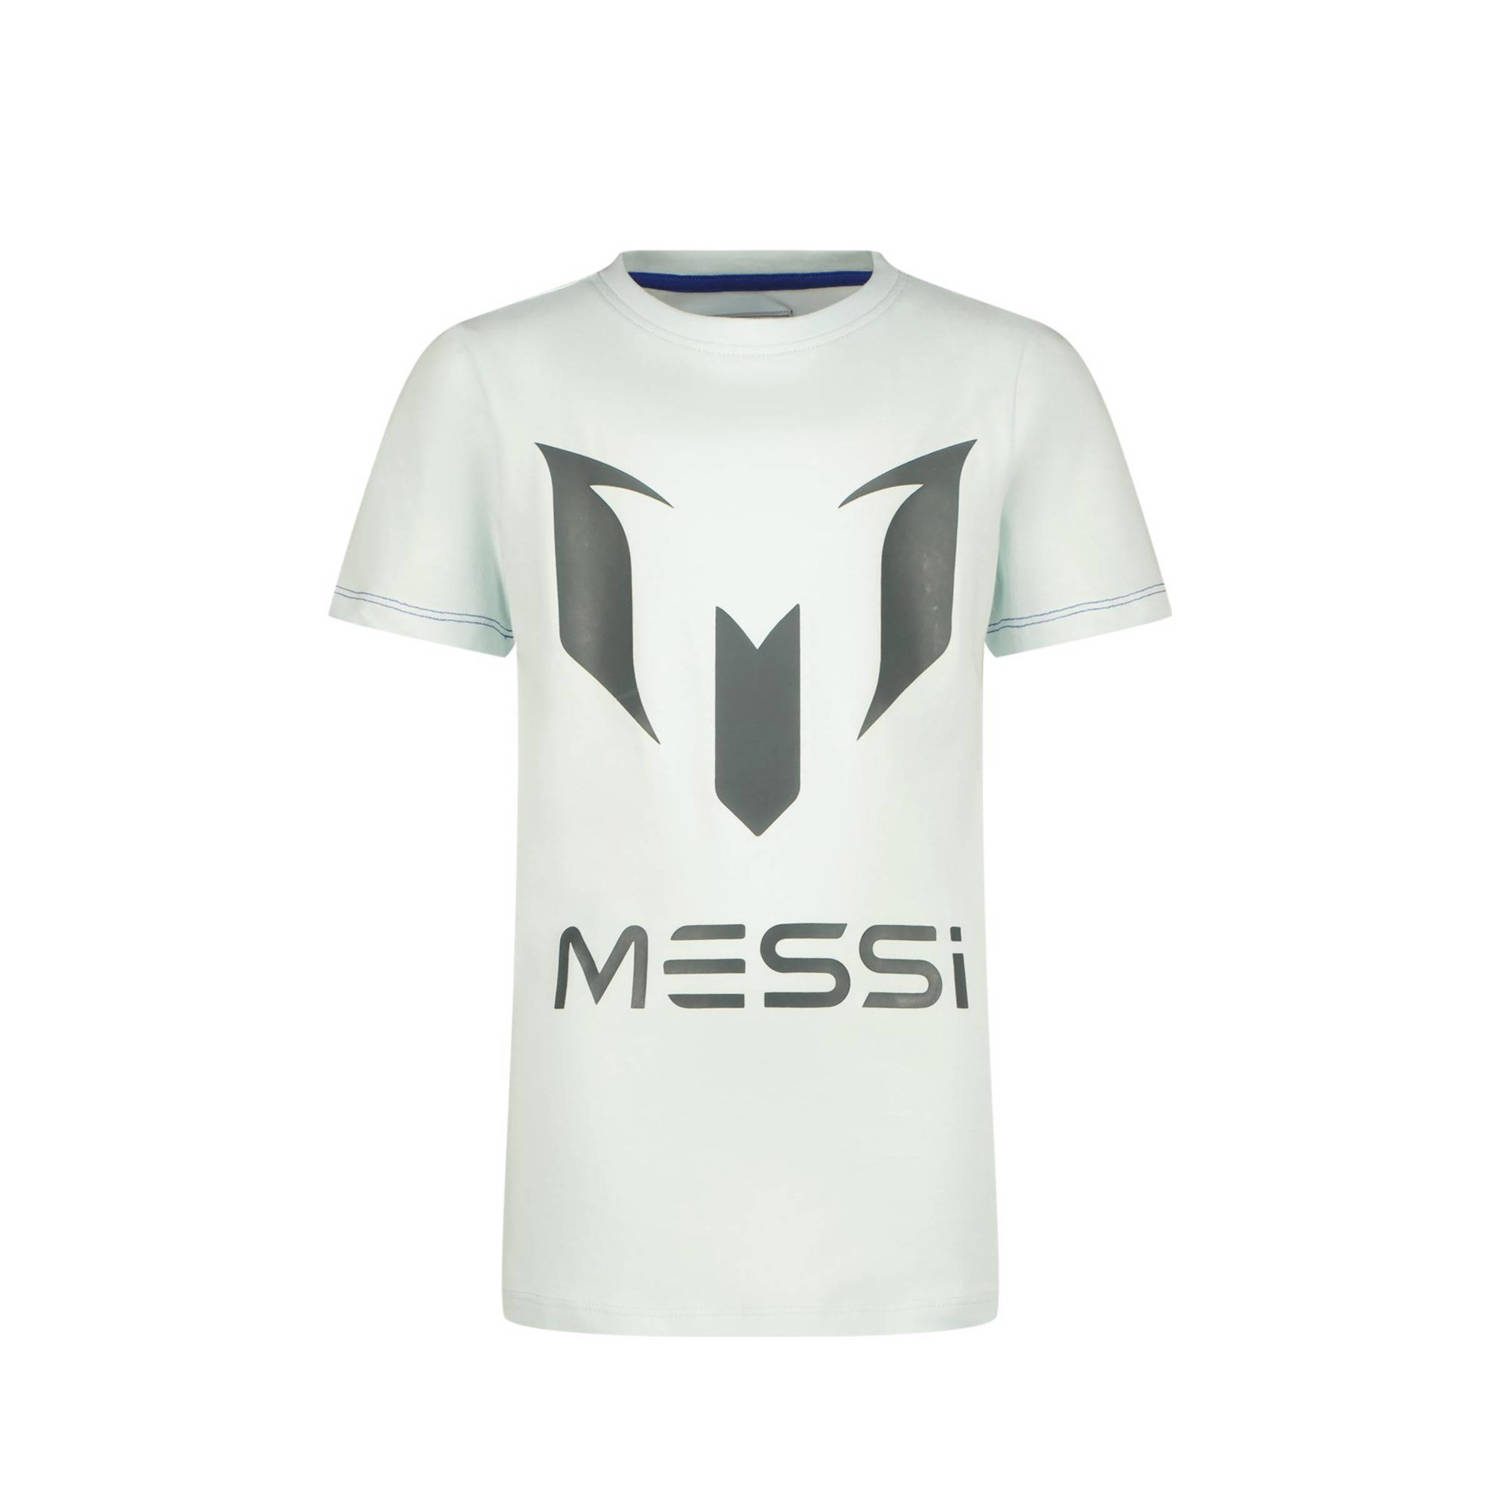 VINGINO x Messi T-shirt met logo lichtblauw grijs Jongens Stretchkatoen Ronde hals 116